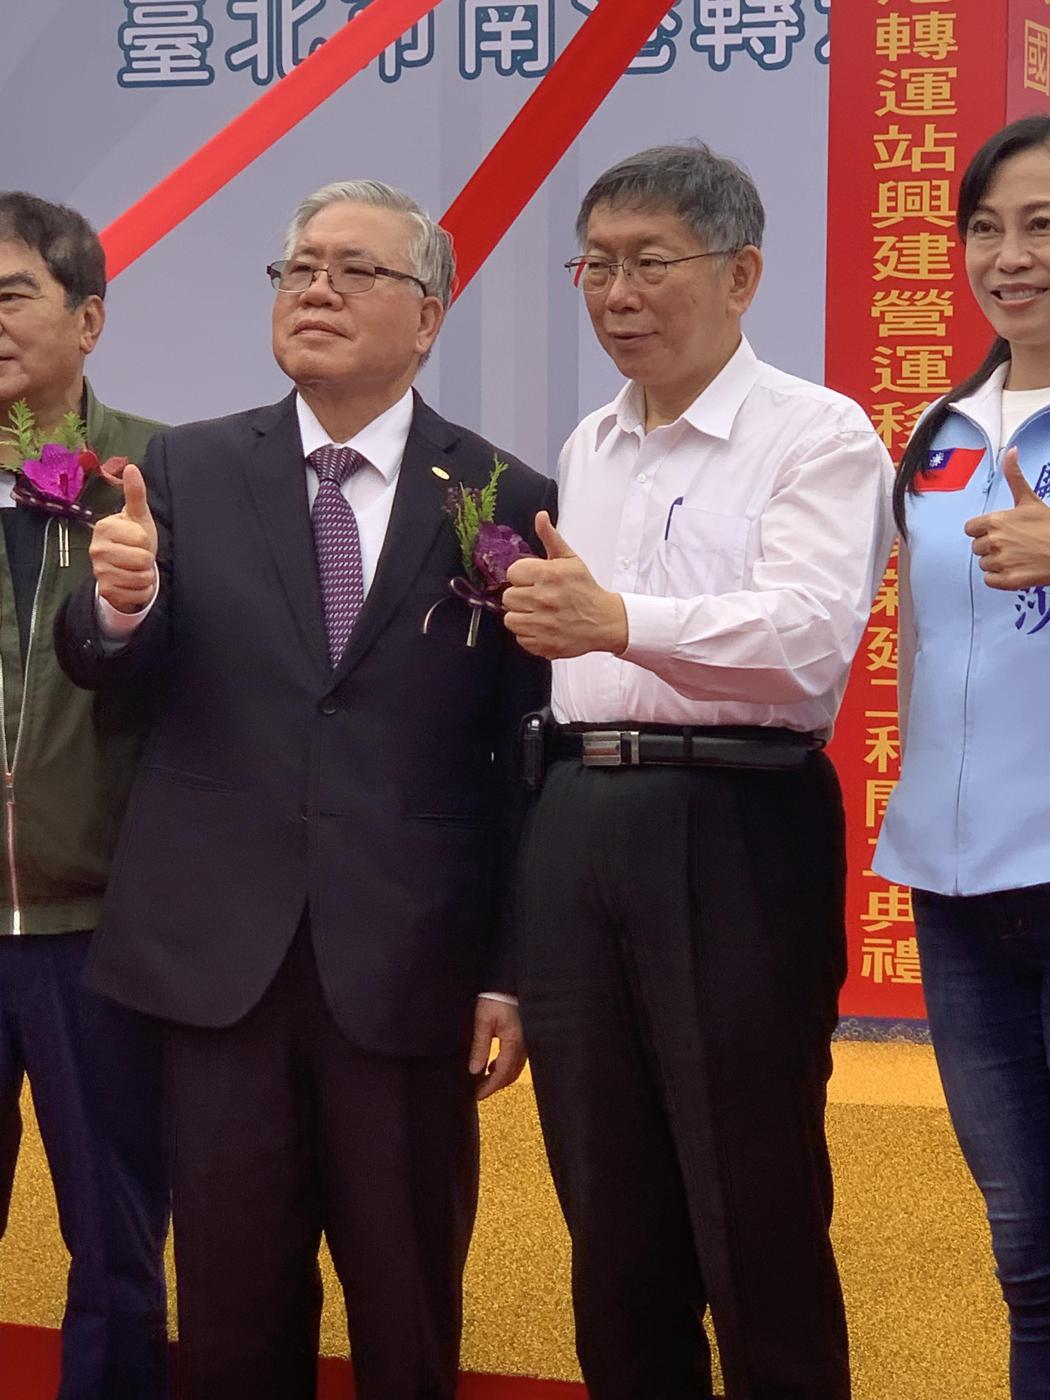 新光人壽董事長潘柏錚（左）、台北市長柯文哲（右），記者齊瑞甄／攝影。